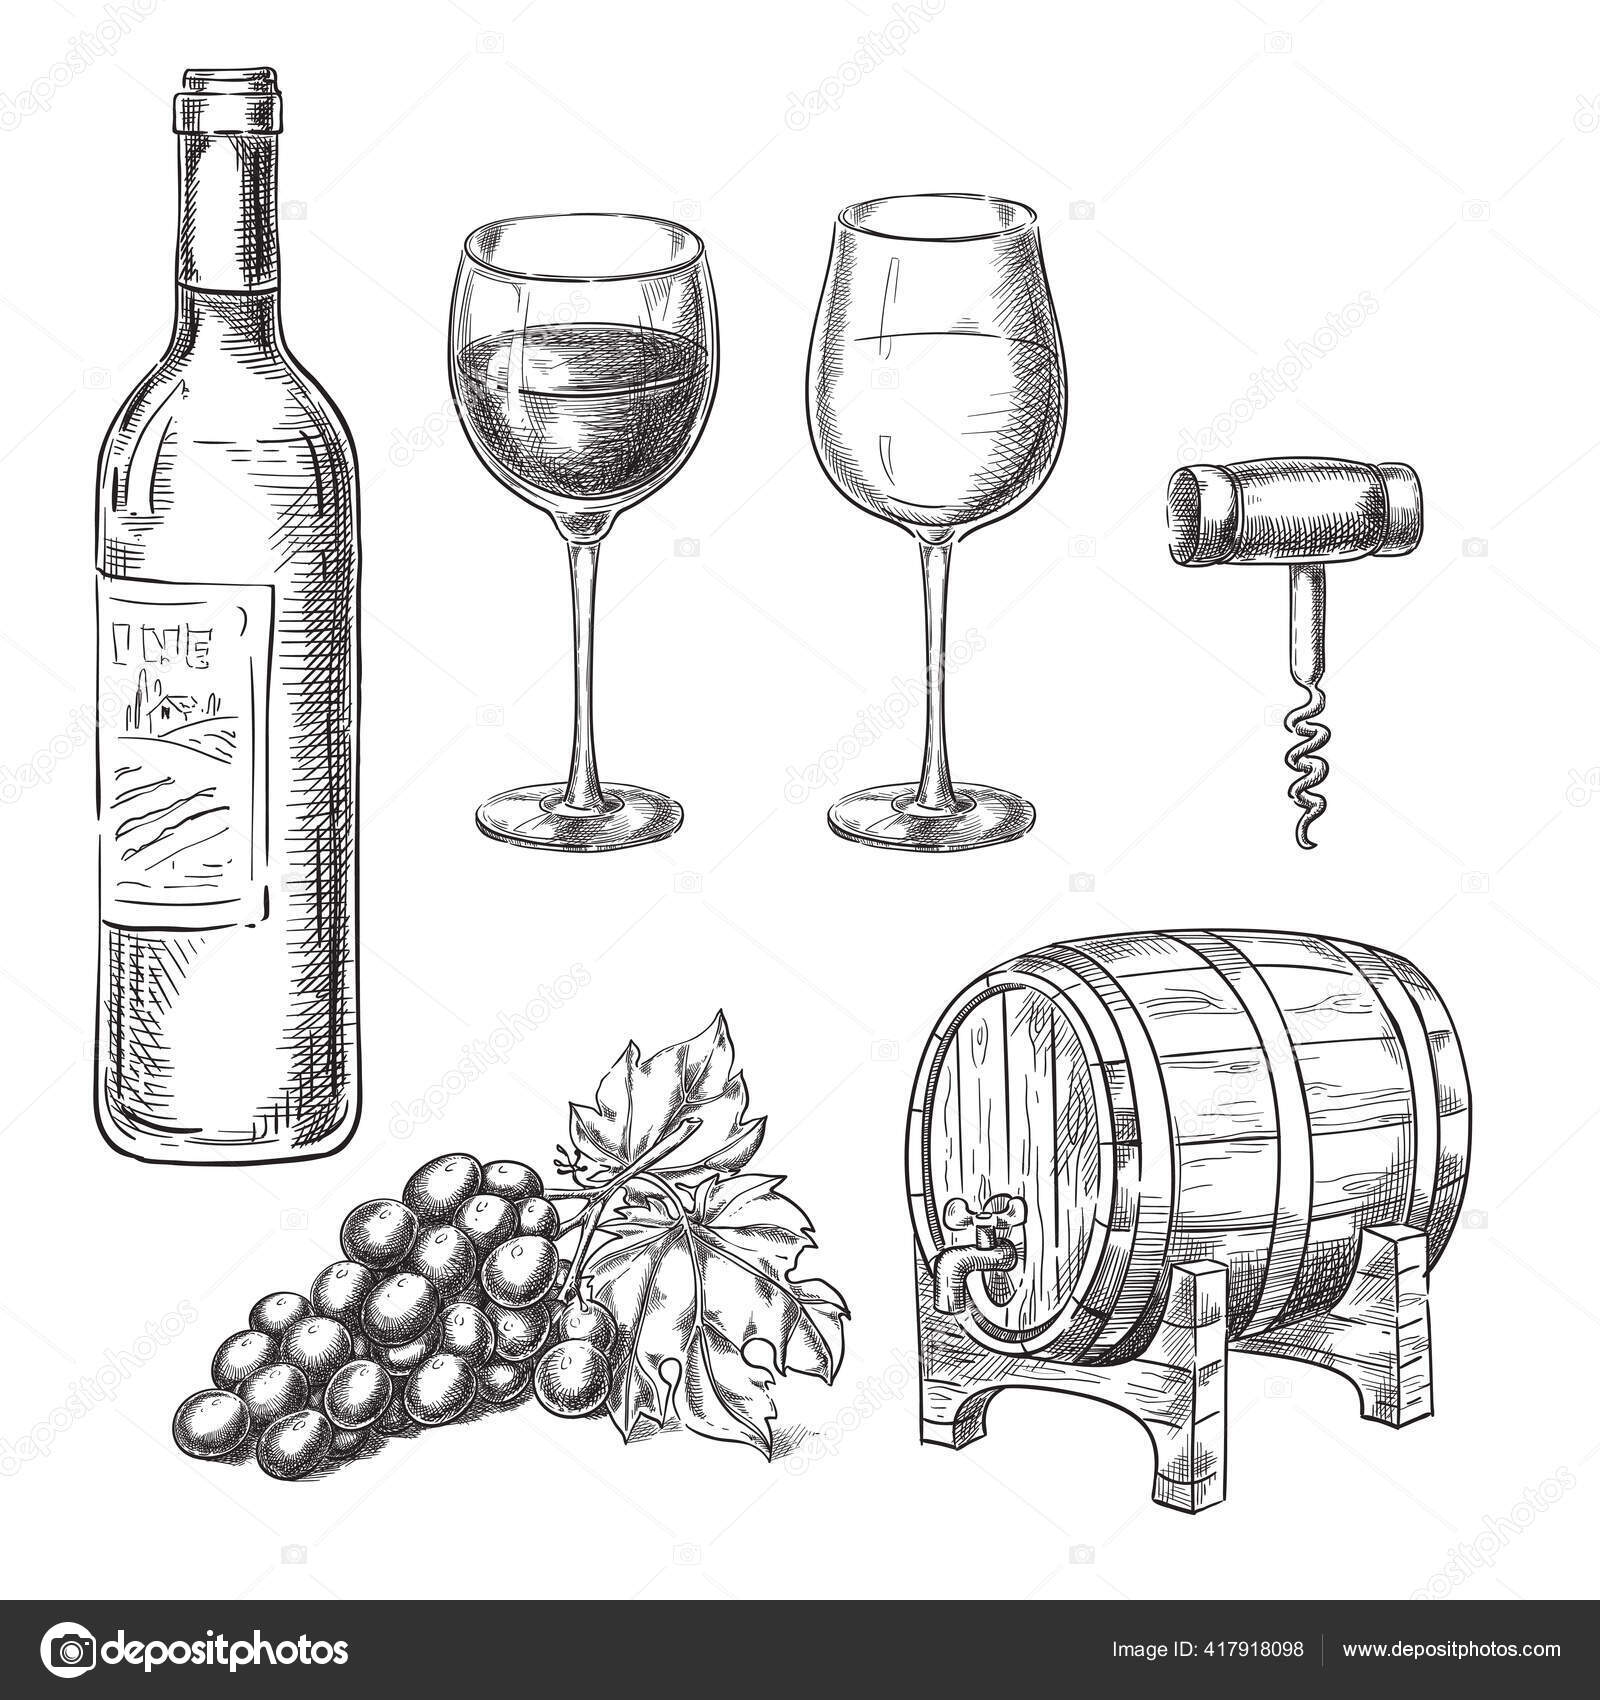 Illustration du vin, des verres et de la tire-bouchon Image